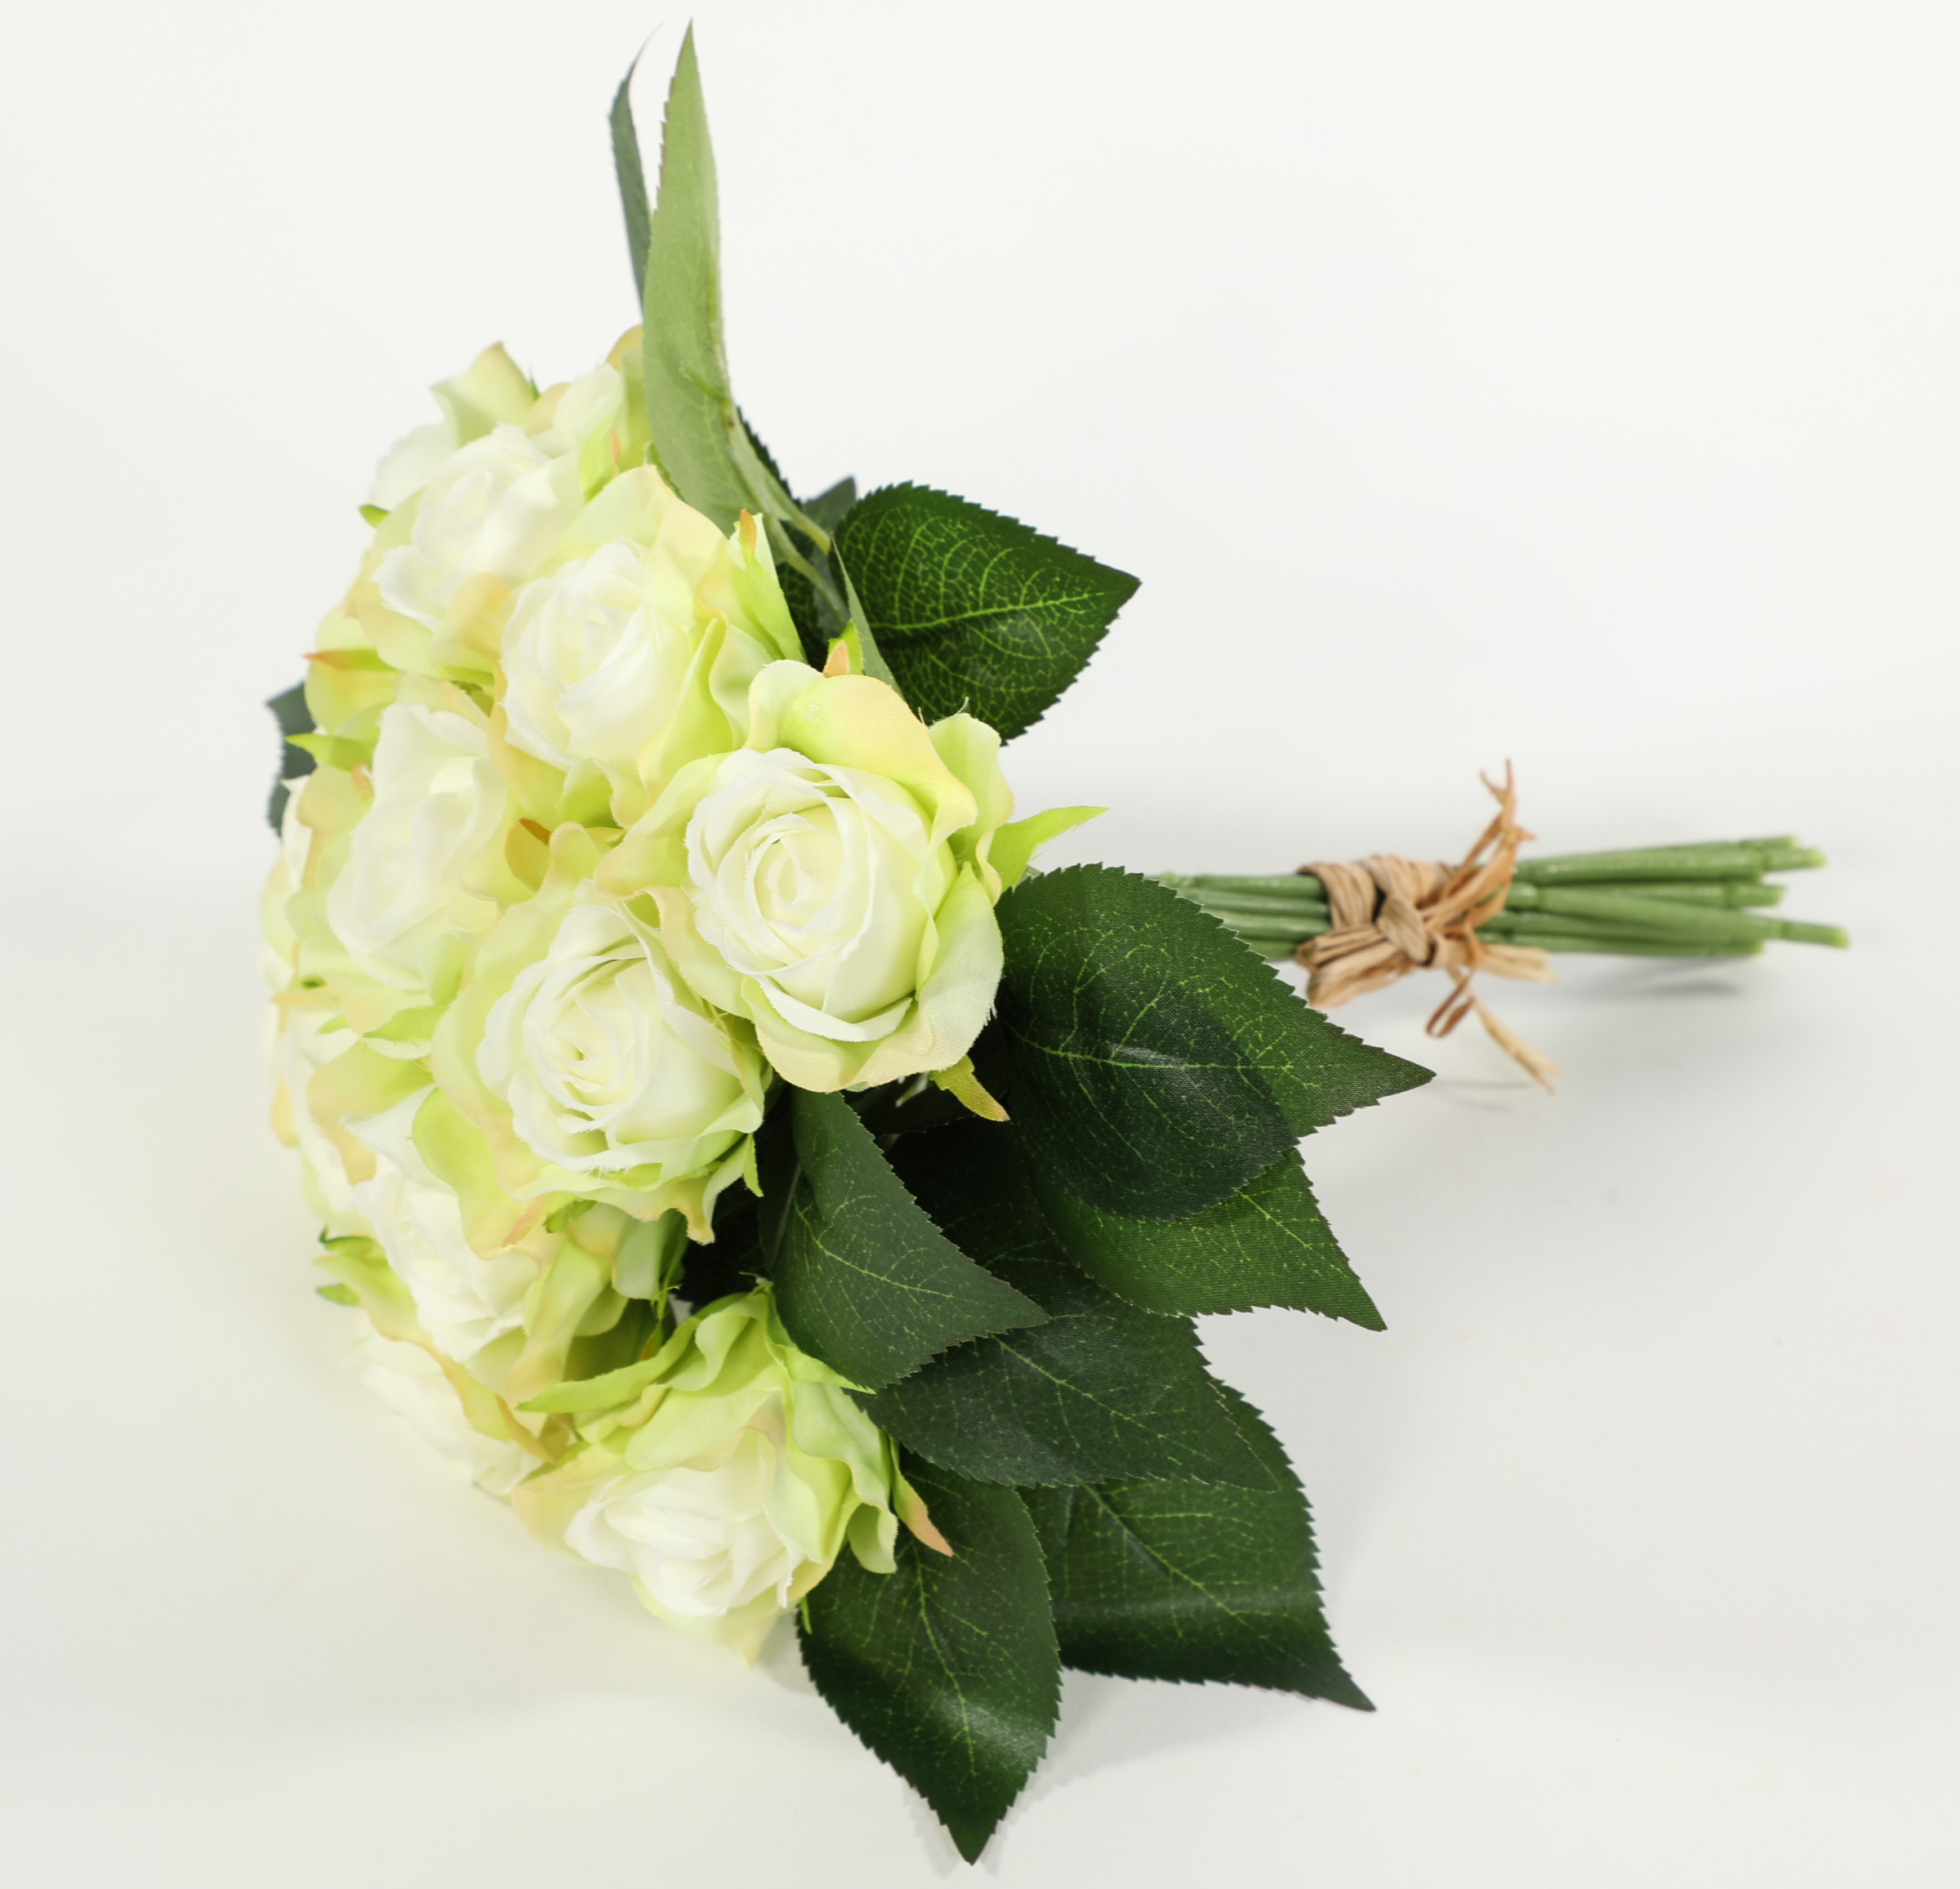 Rosenbouquet 25cm weiß-grün mit 12 Rosen CG Kunstblumen künstlicher Strauß  Rosen Rosenstrauß